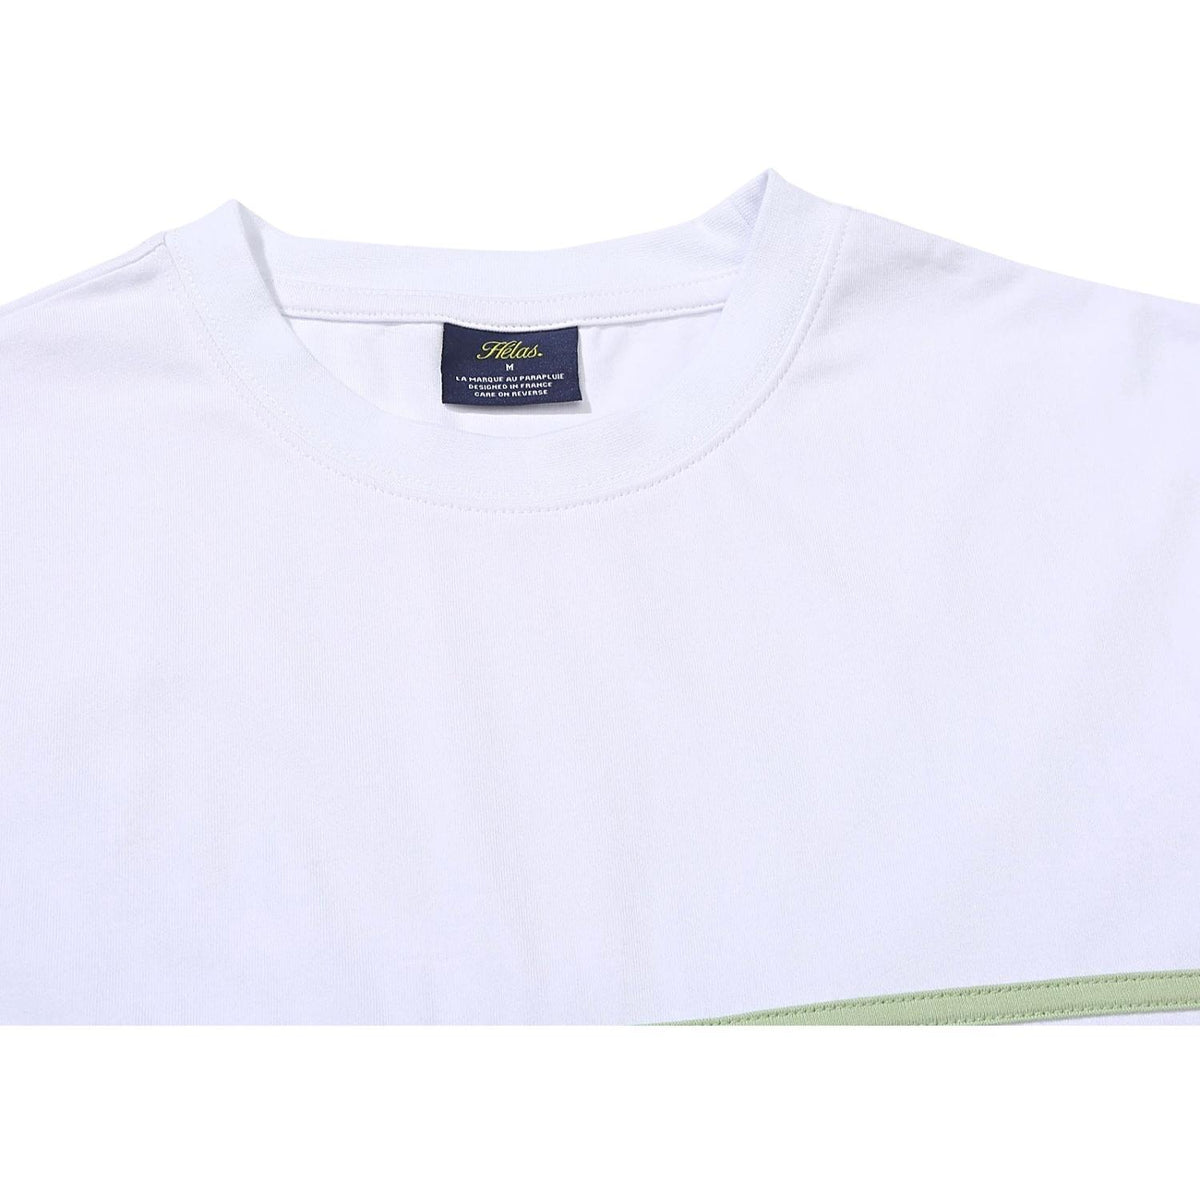 Helas Clint T-Shirt - White - Mens Skate Brand T-Shirt by Helas